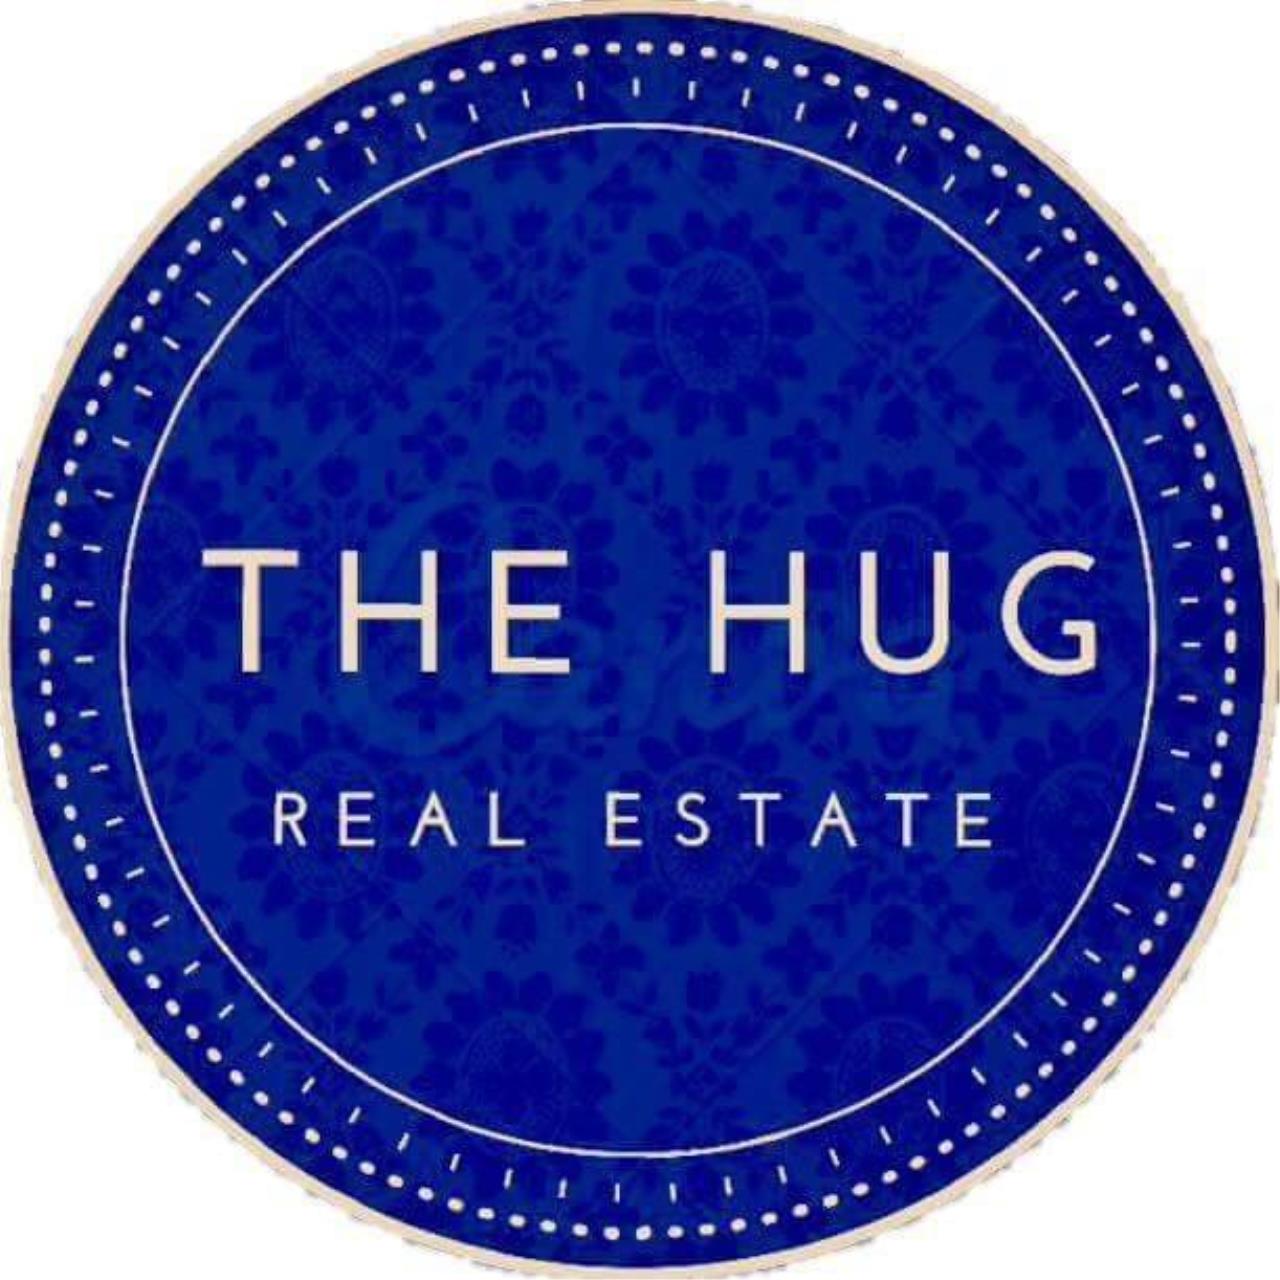 The Hug Real Estate